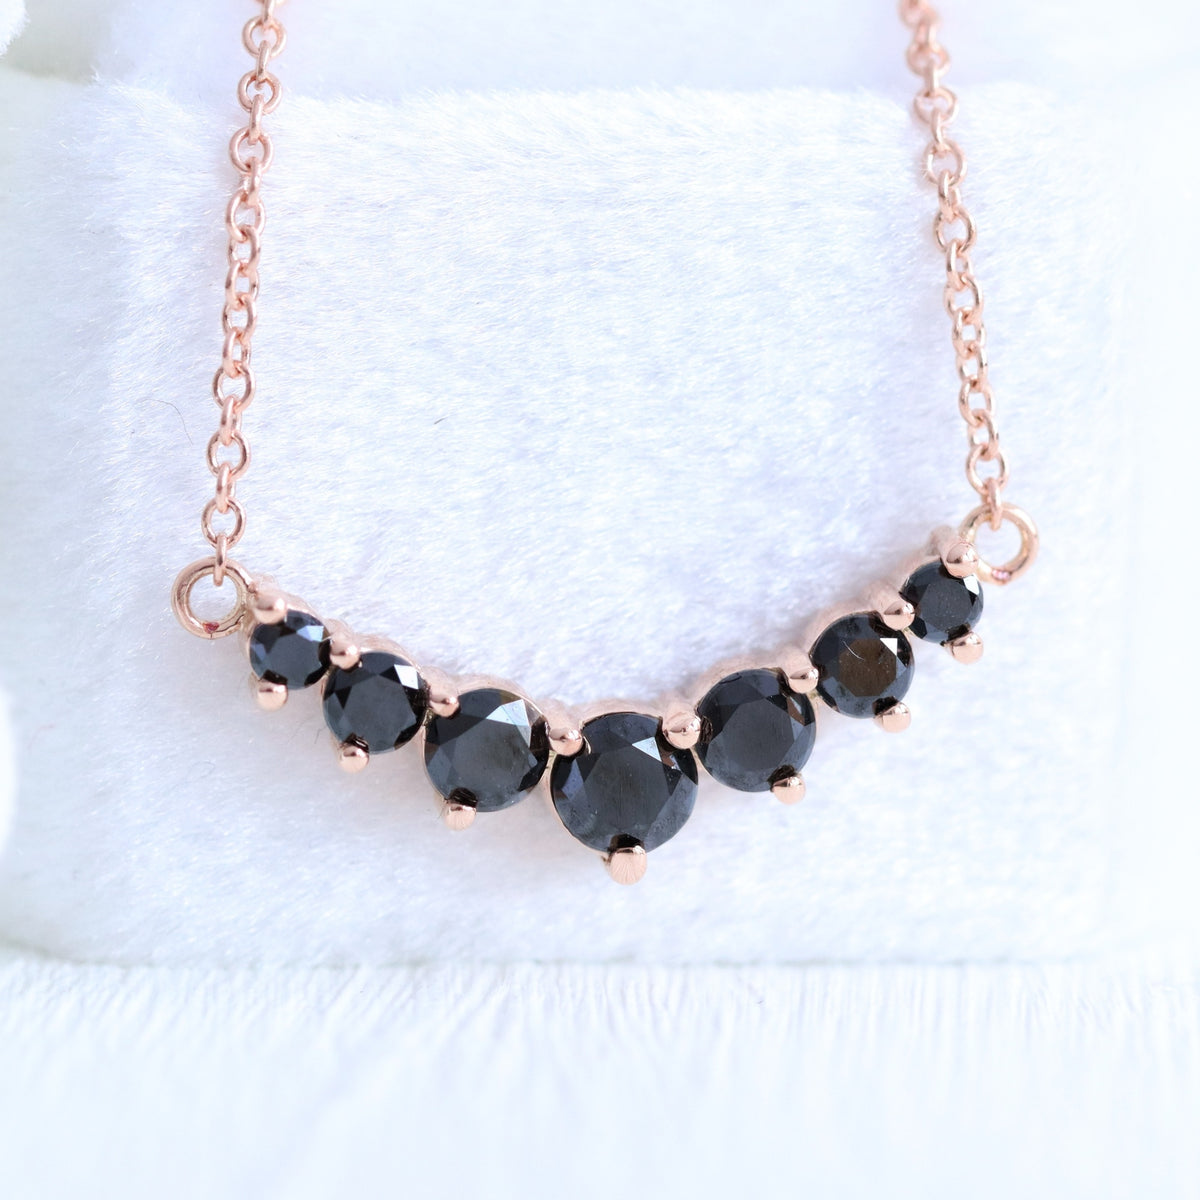 7 black diamond necklace rose gold drop pendant chain la more design jewelry